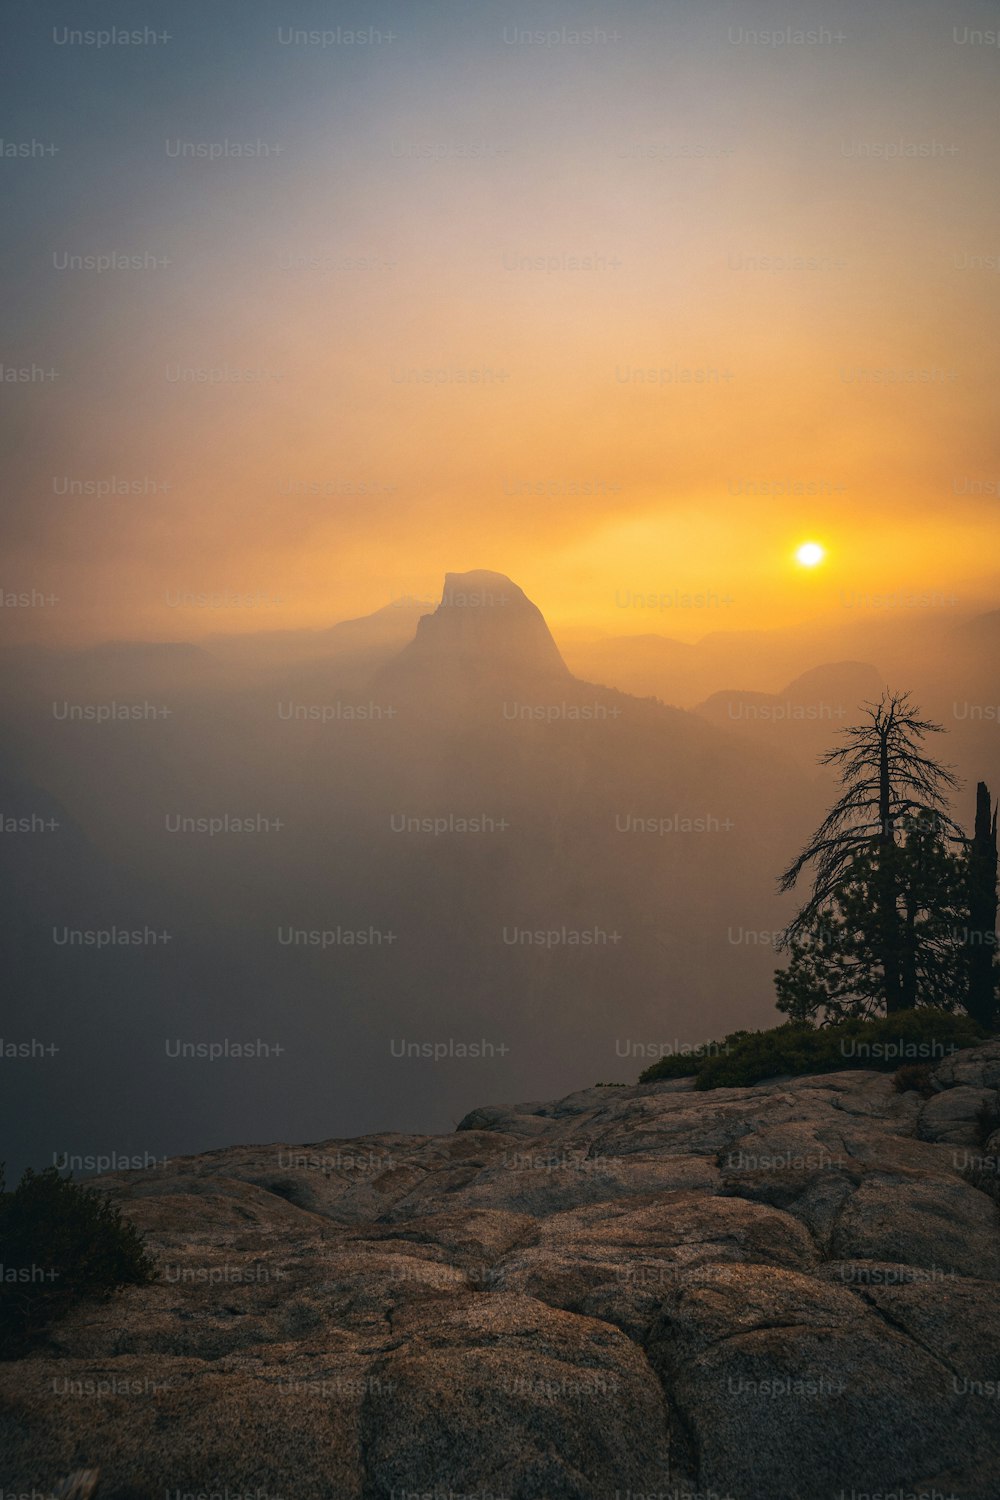 Le soleil se couche sur une montagne brumeuse